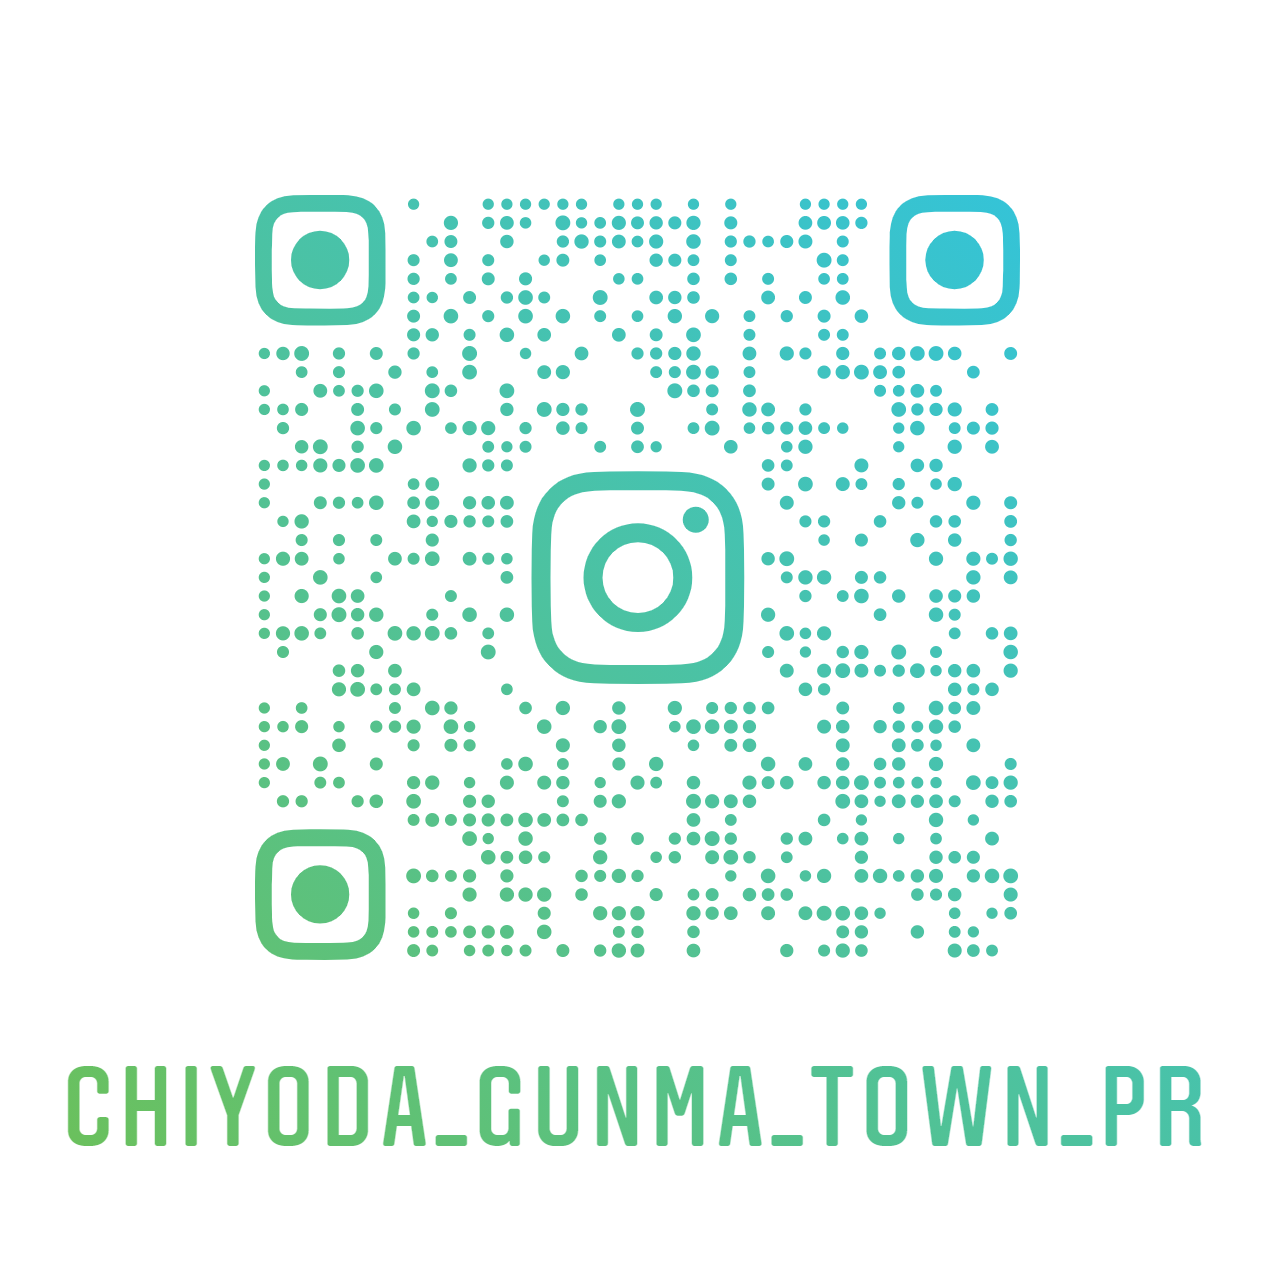 chiyoda_gunma_town_pr_nametag.png